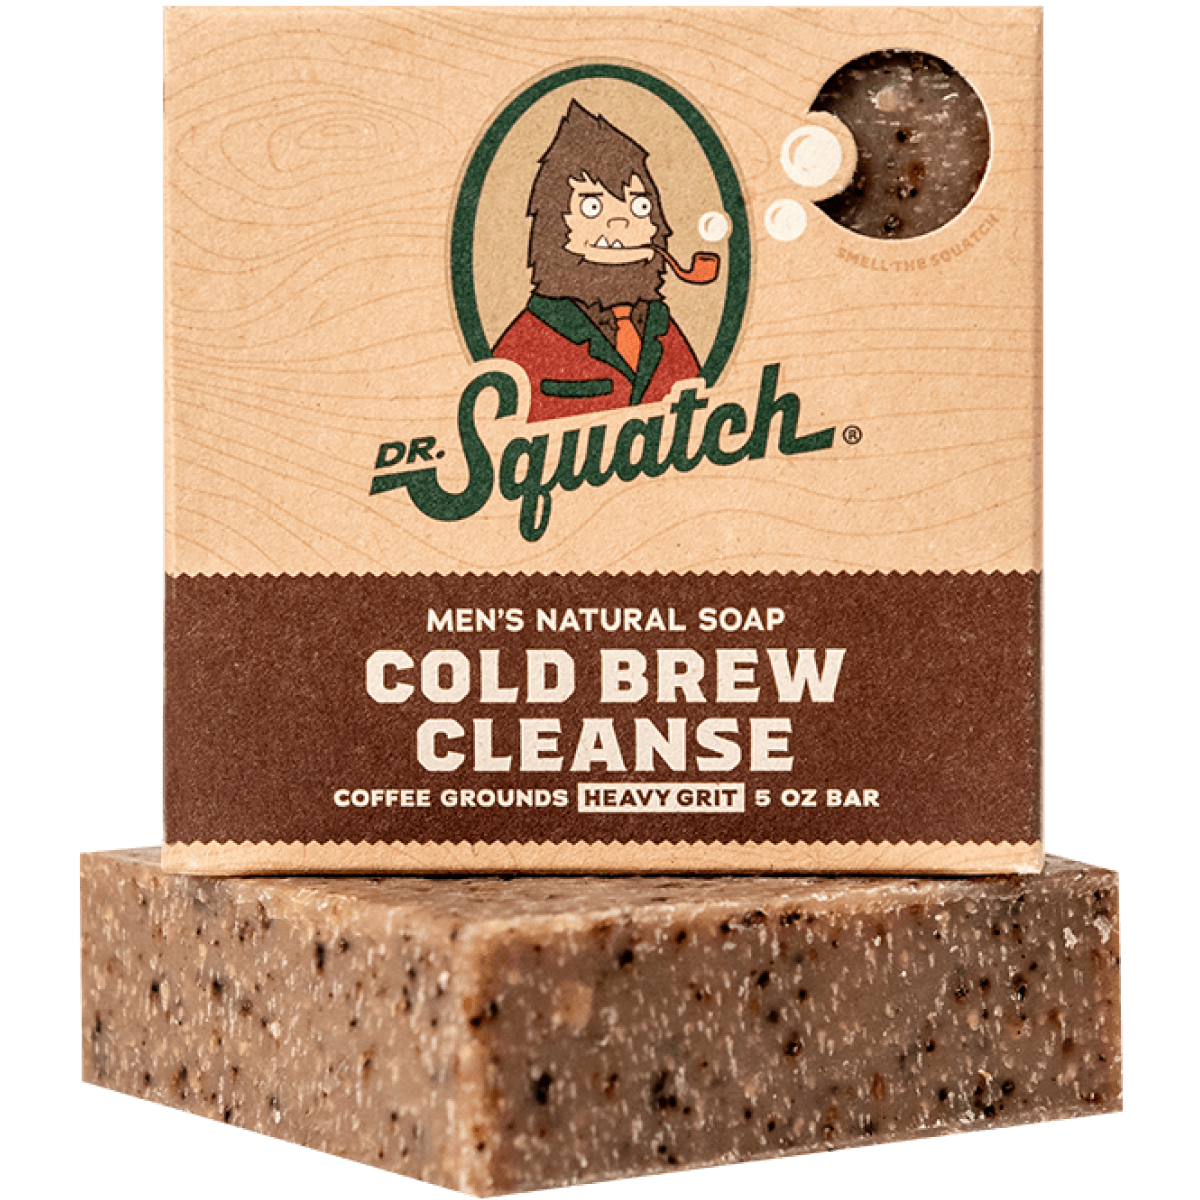 Dr. Squatch Men's Natural Soap Cold Brew Cleanse 5oz Bar